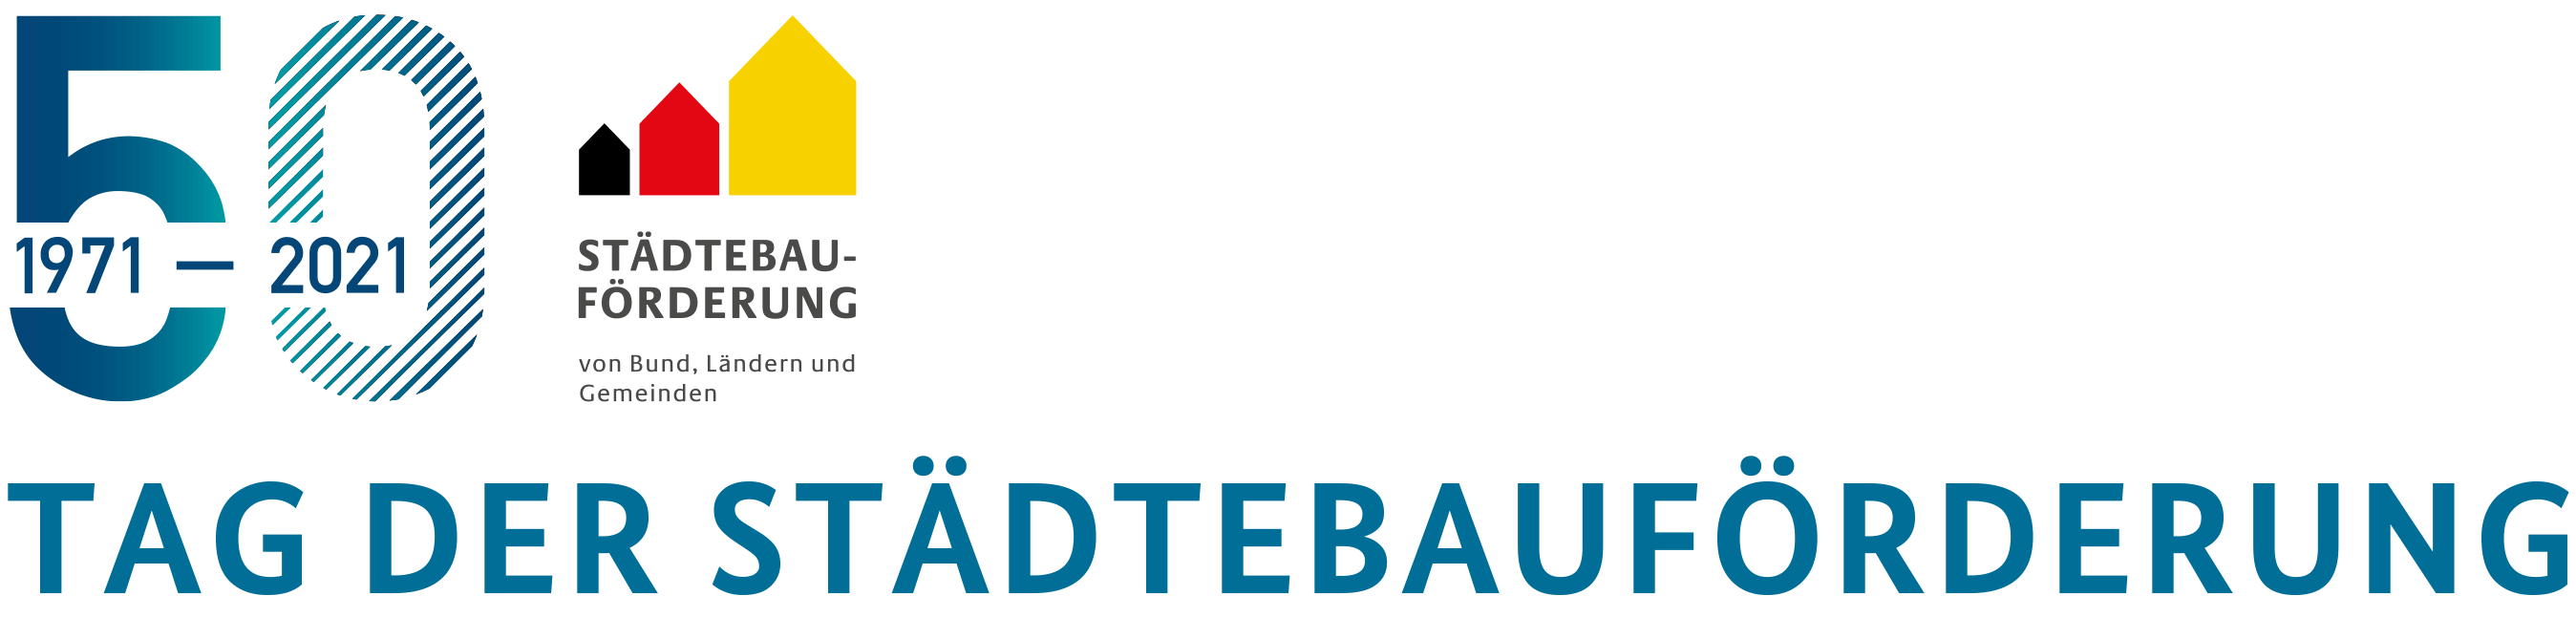 Logo Tag der Städtebauförderung 2021